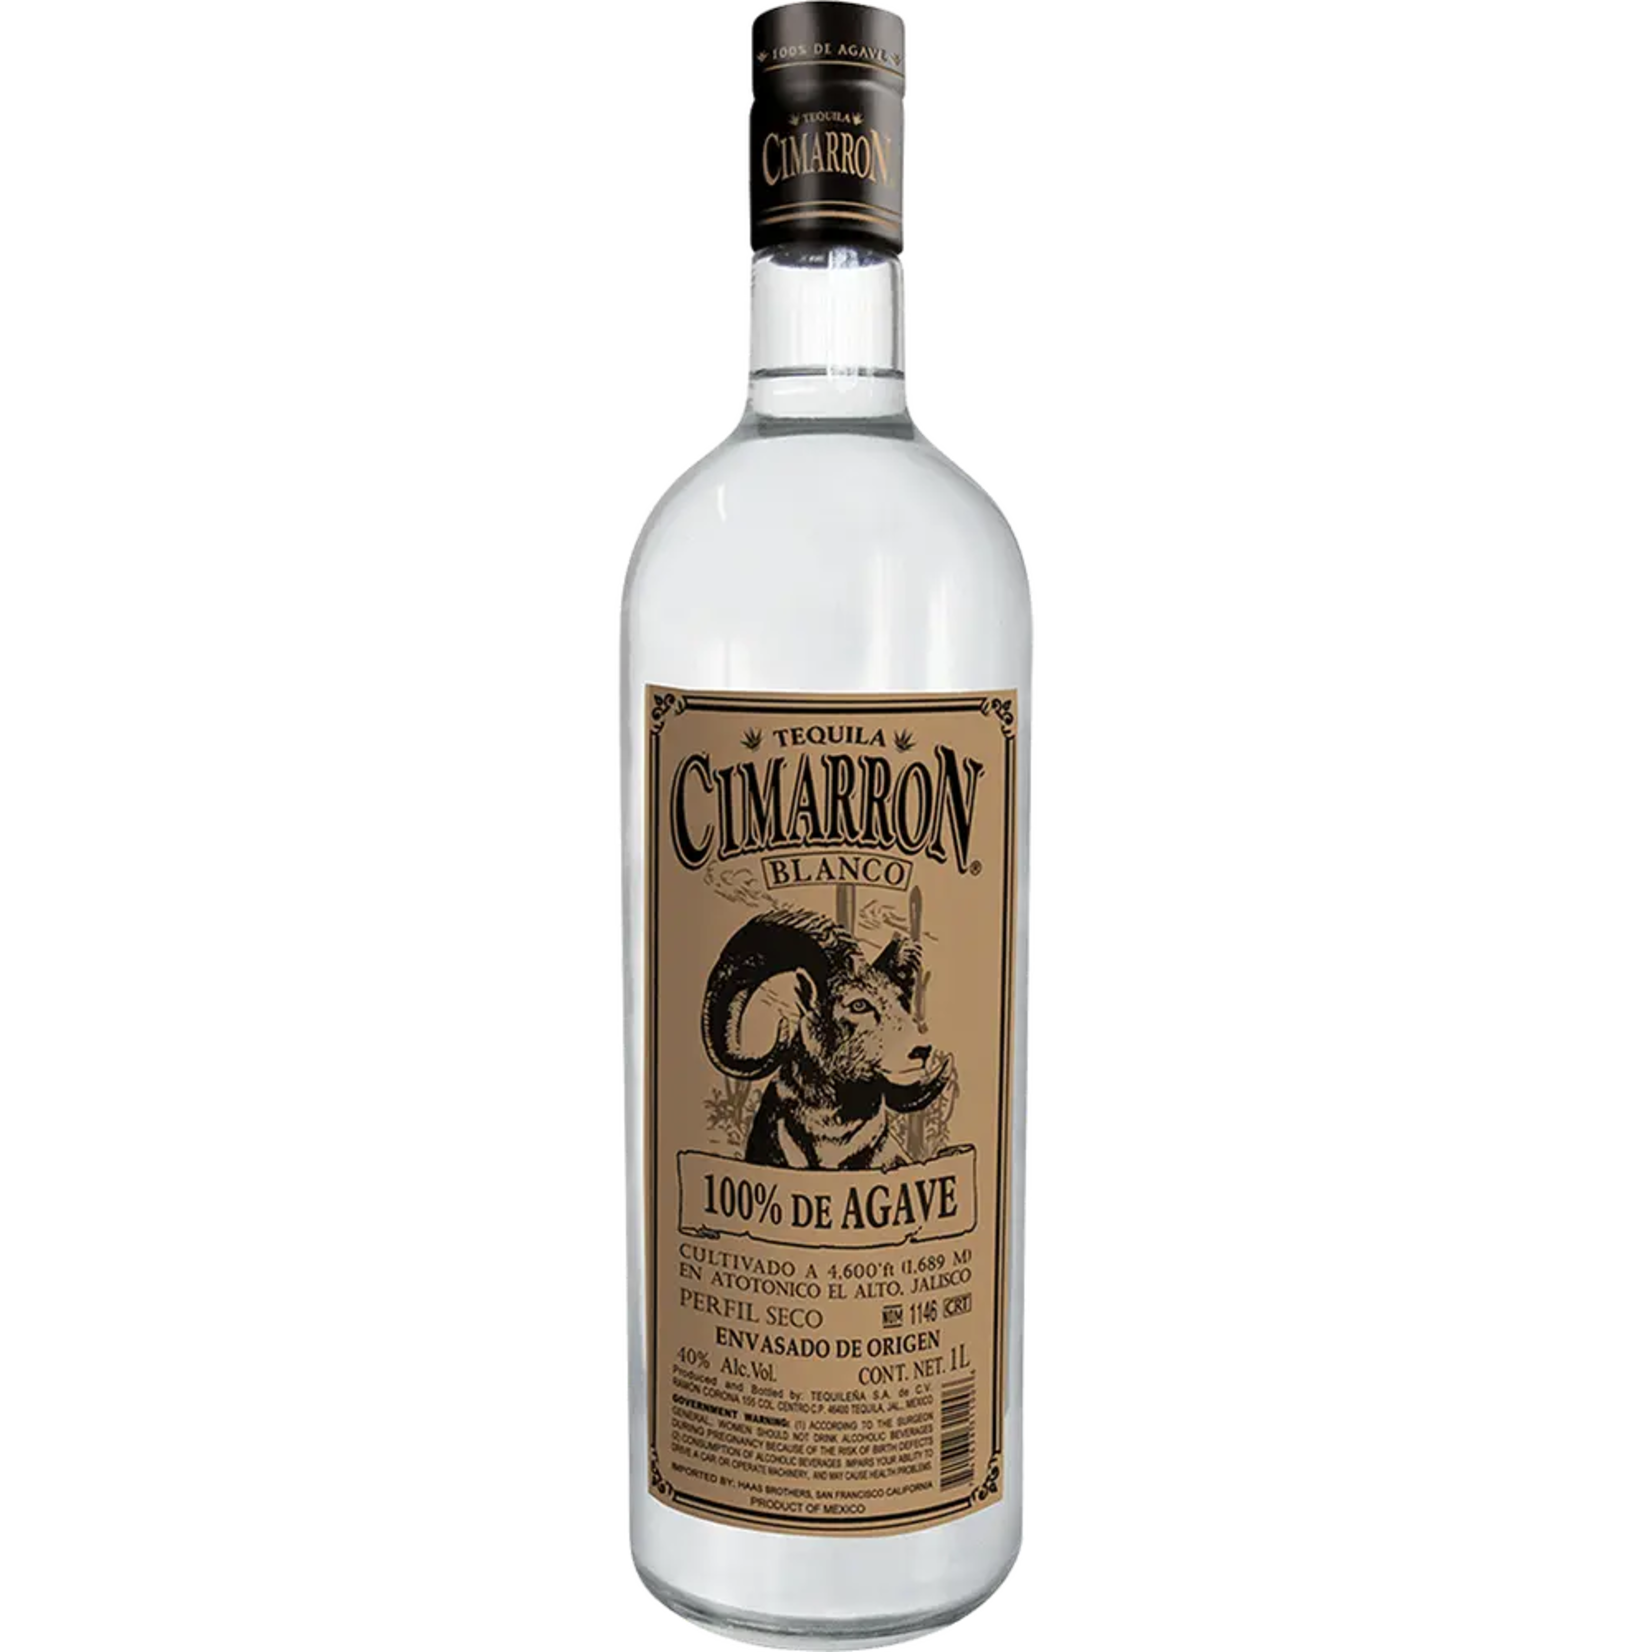 Cimarron Blanco Tequila 80Proof 750ml